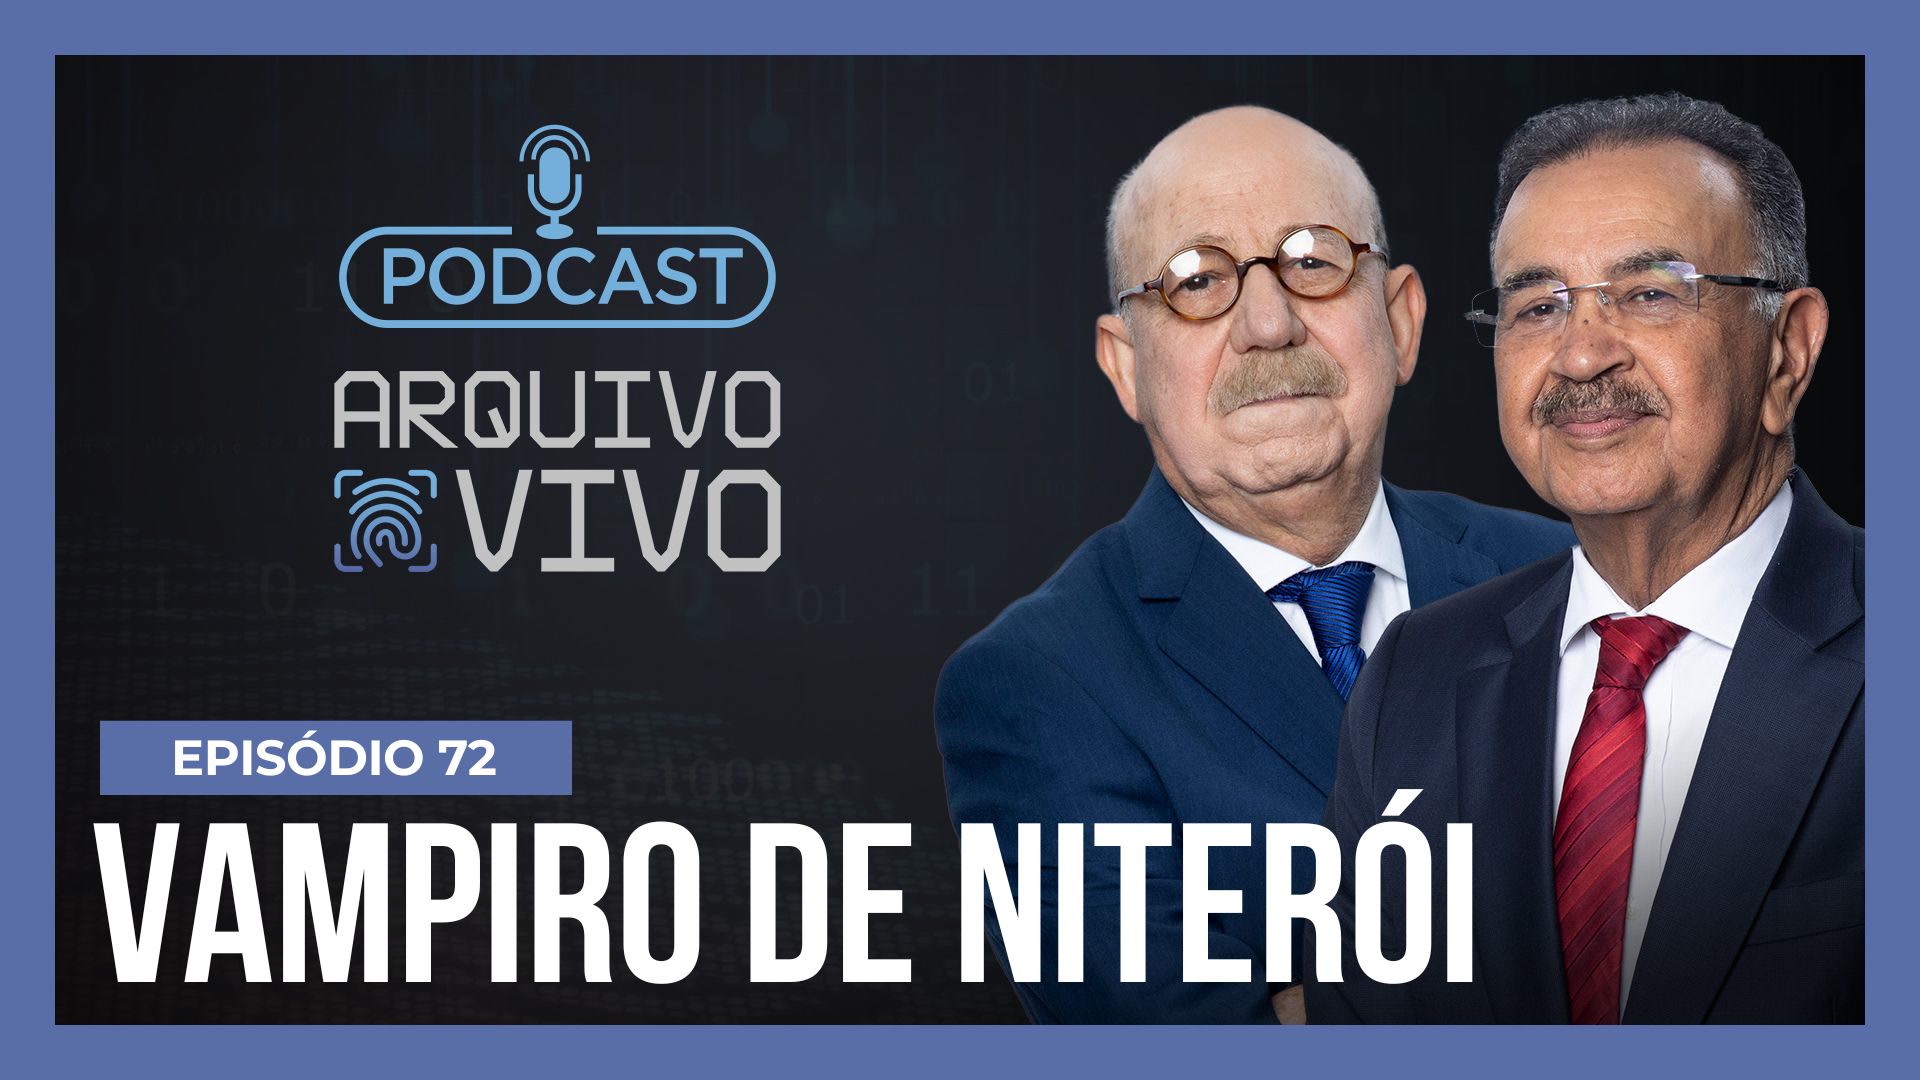 Vídeo: Podcast Arquivo Vivo : "Vampiro de Niterói", o homem que abusou sexualmente de 14 crianças no Rio | Ep. 72